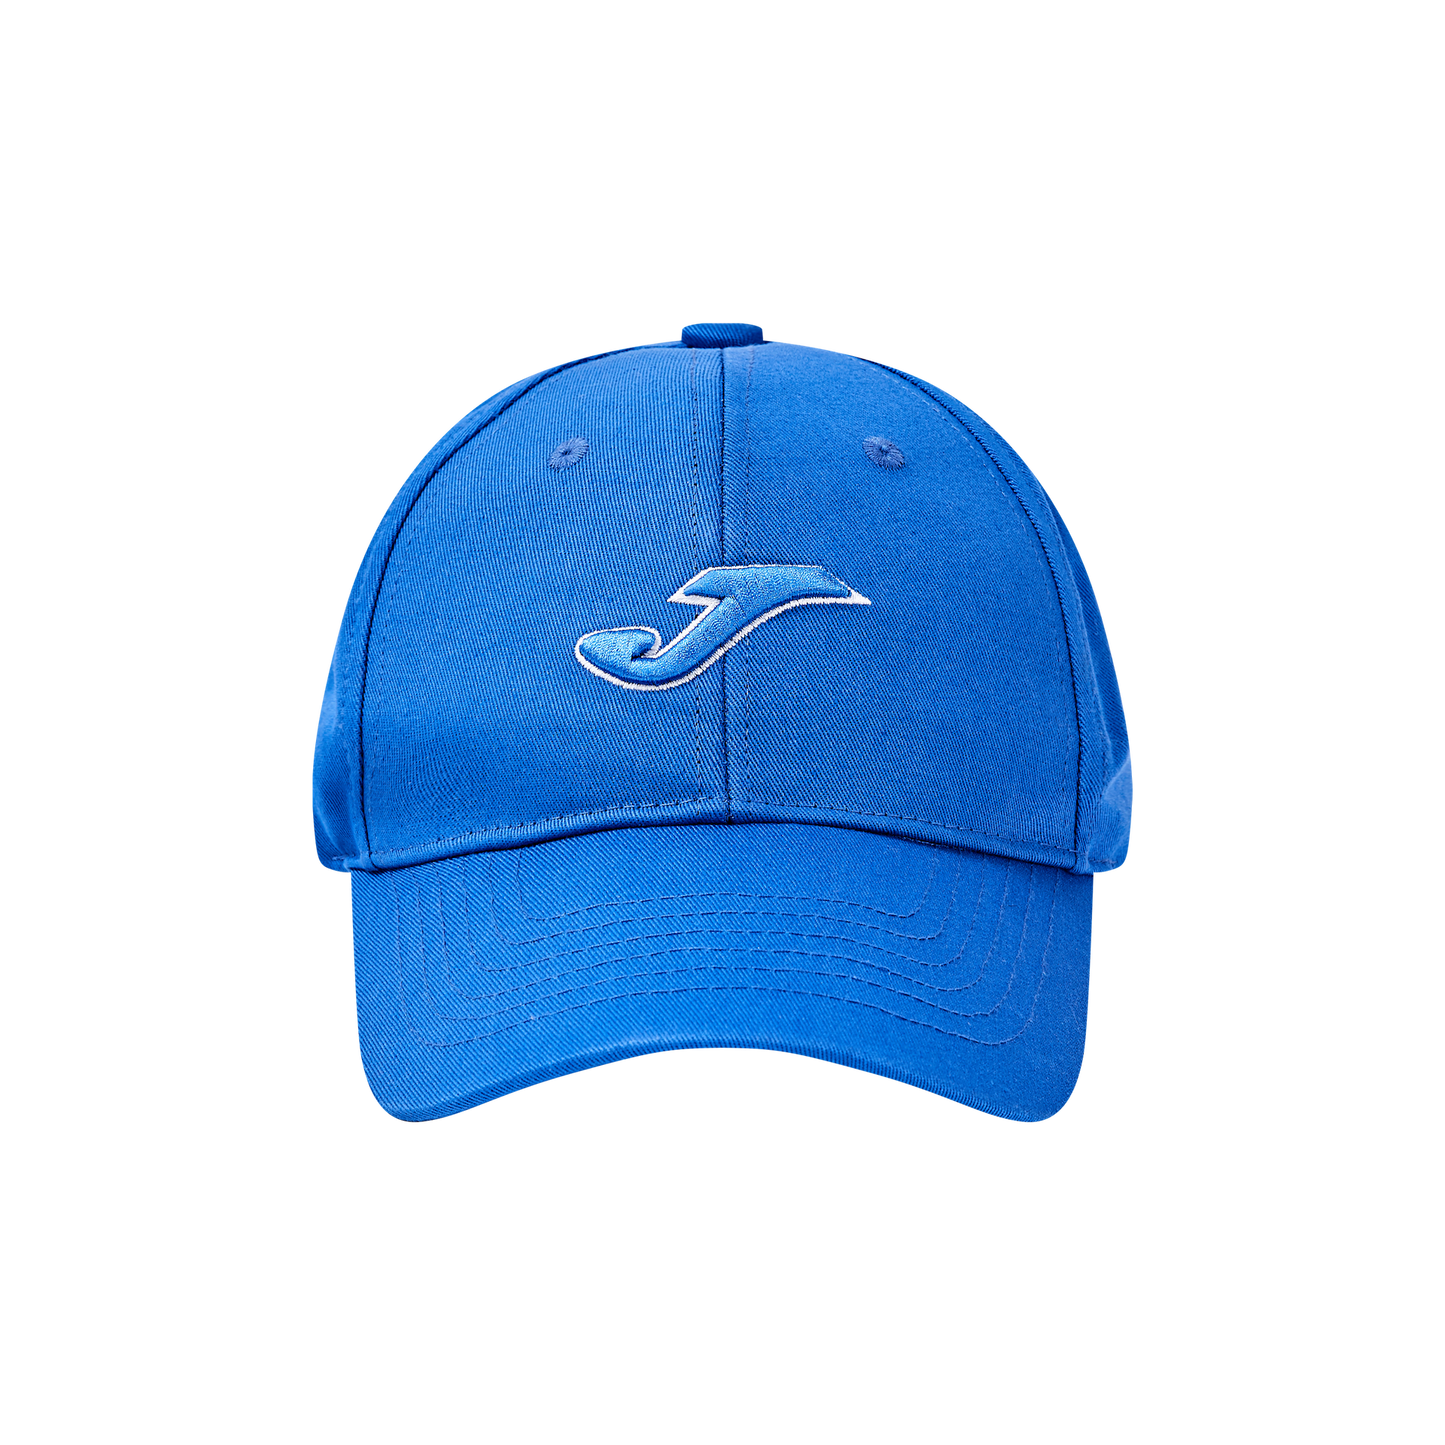 Children's Baseball Cap [Black/Navy Blue]